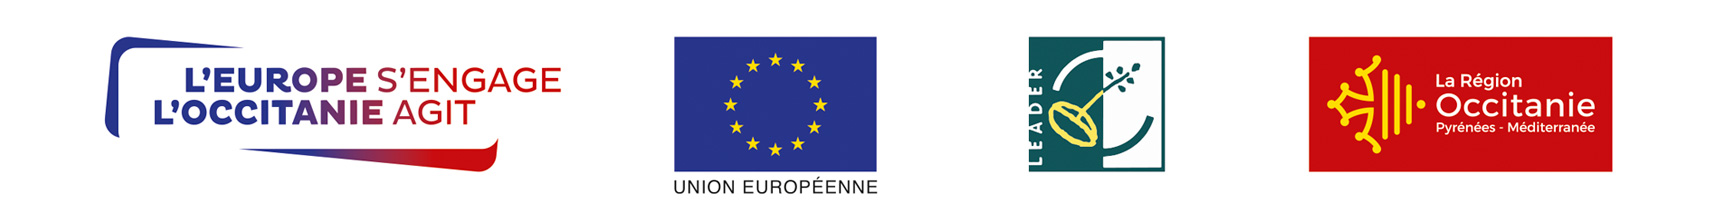 Partenaires LEADER - L'Europe & La Région Occitanie